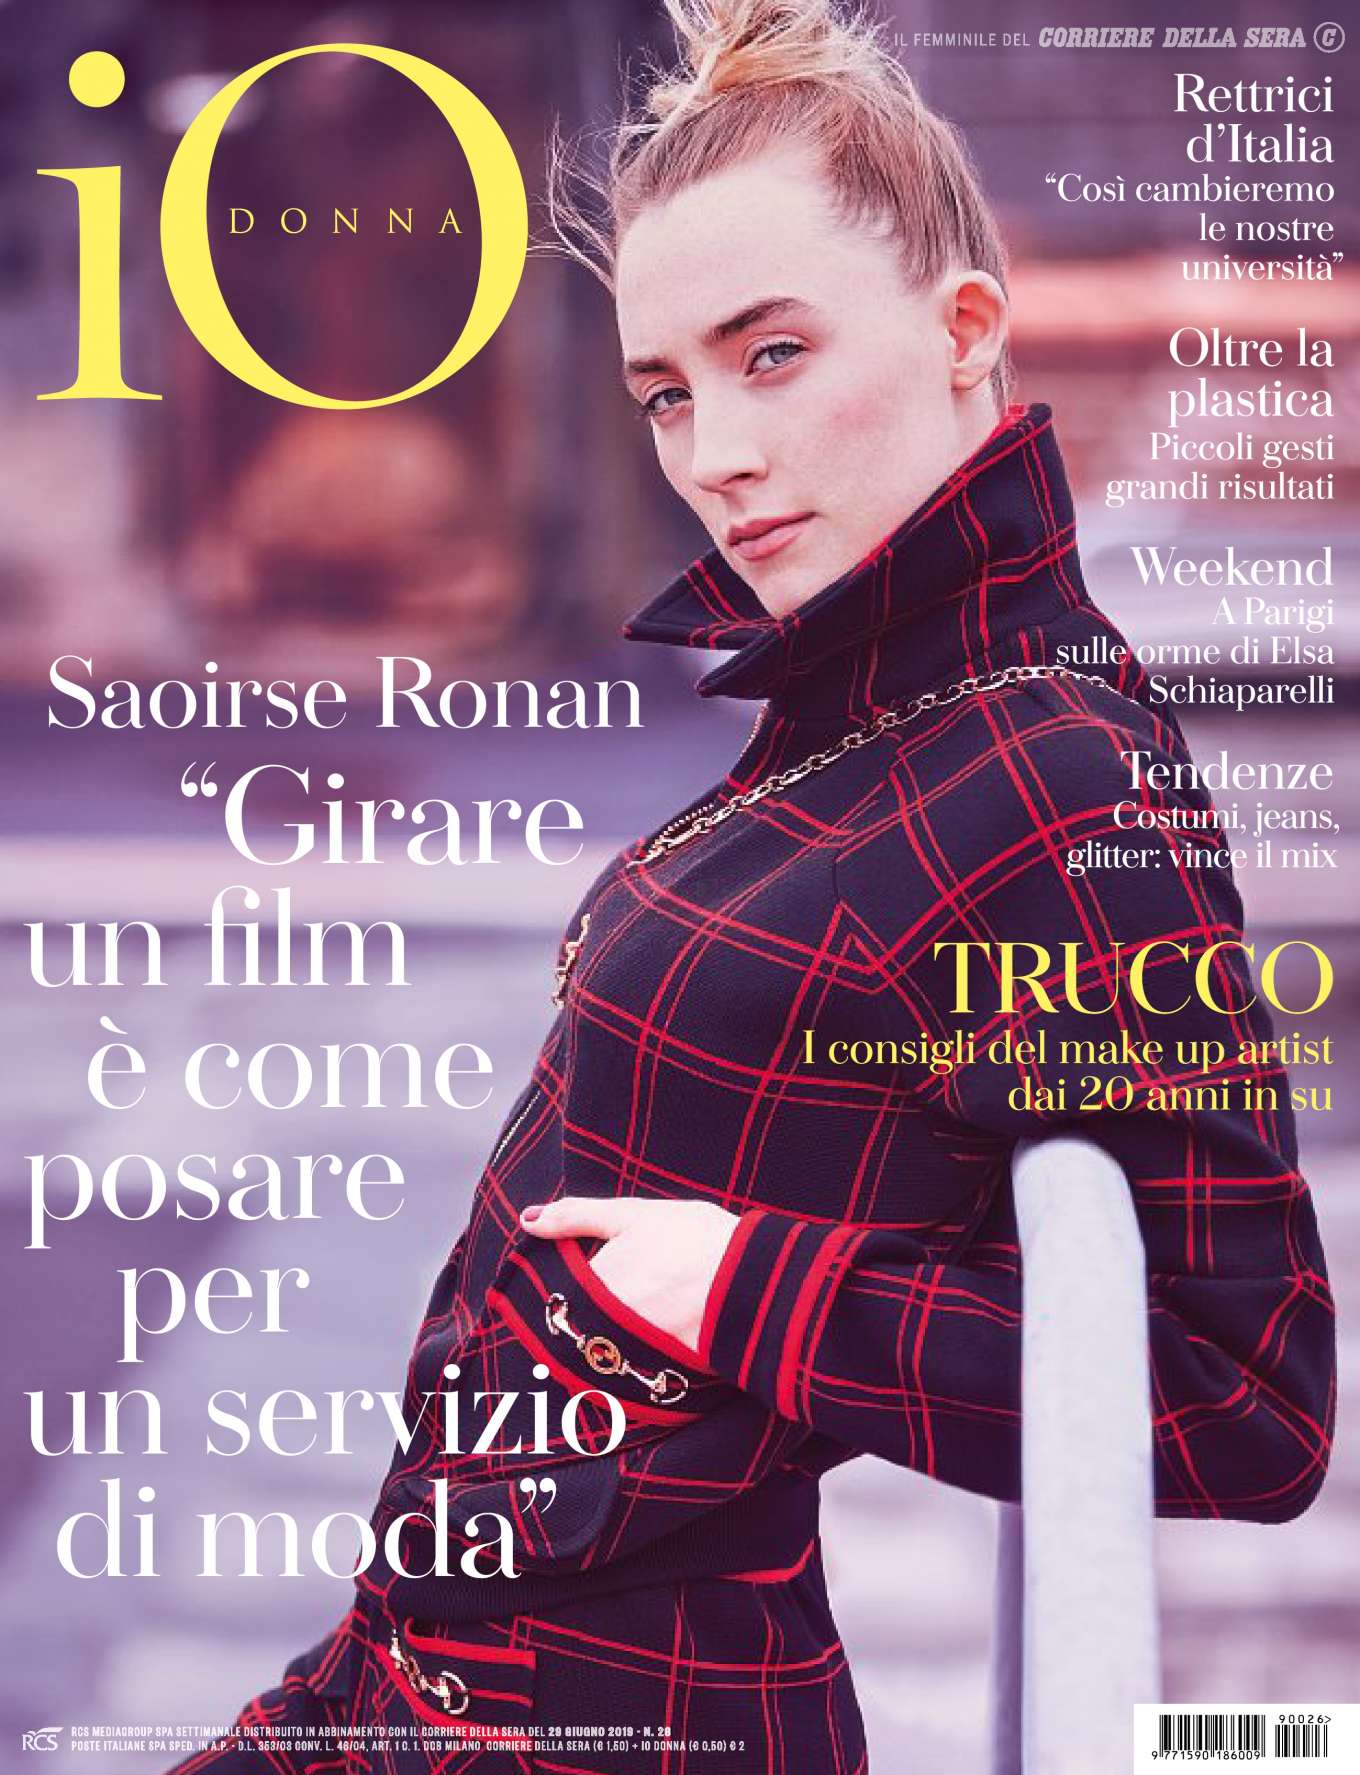 Saoirse Ronan â€“ Io Donna del Corriere della Sera Magazine (June 2019)